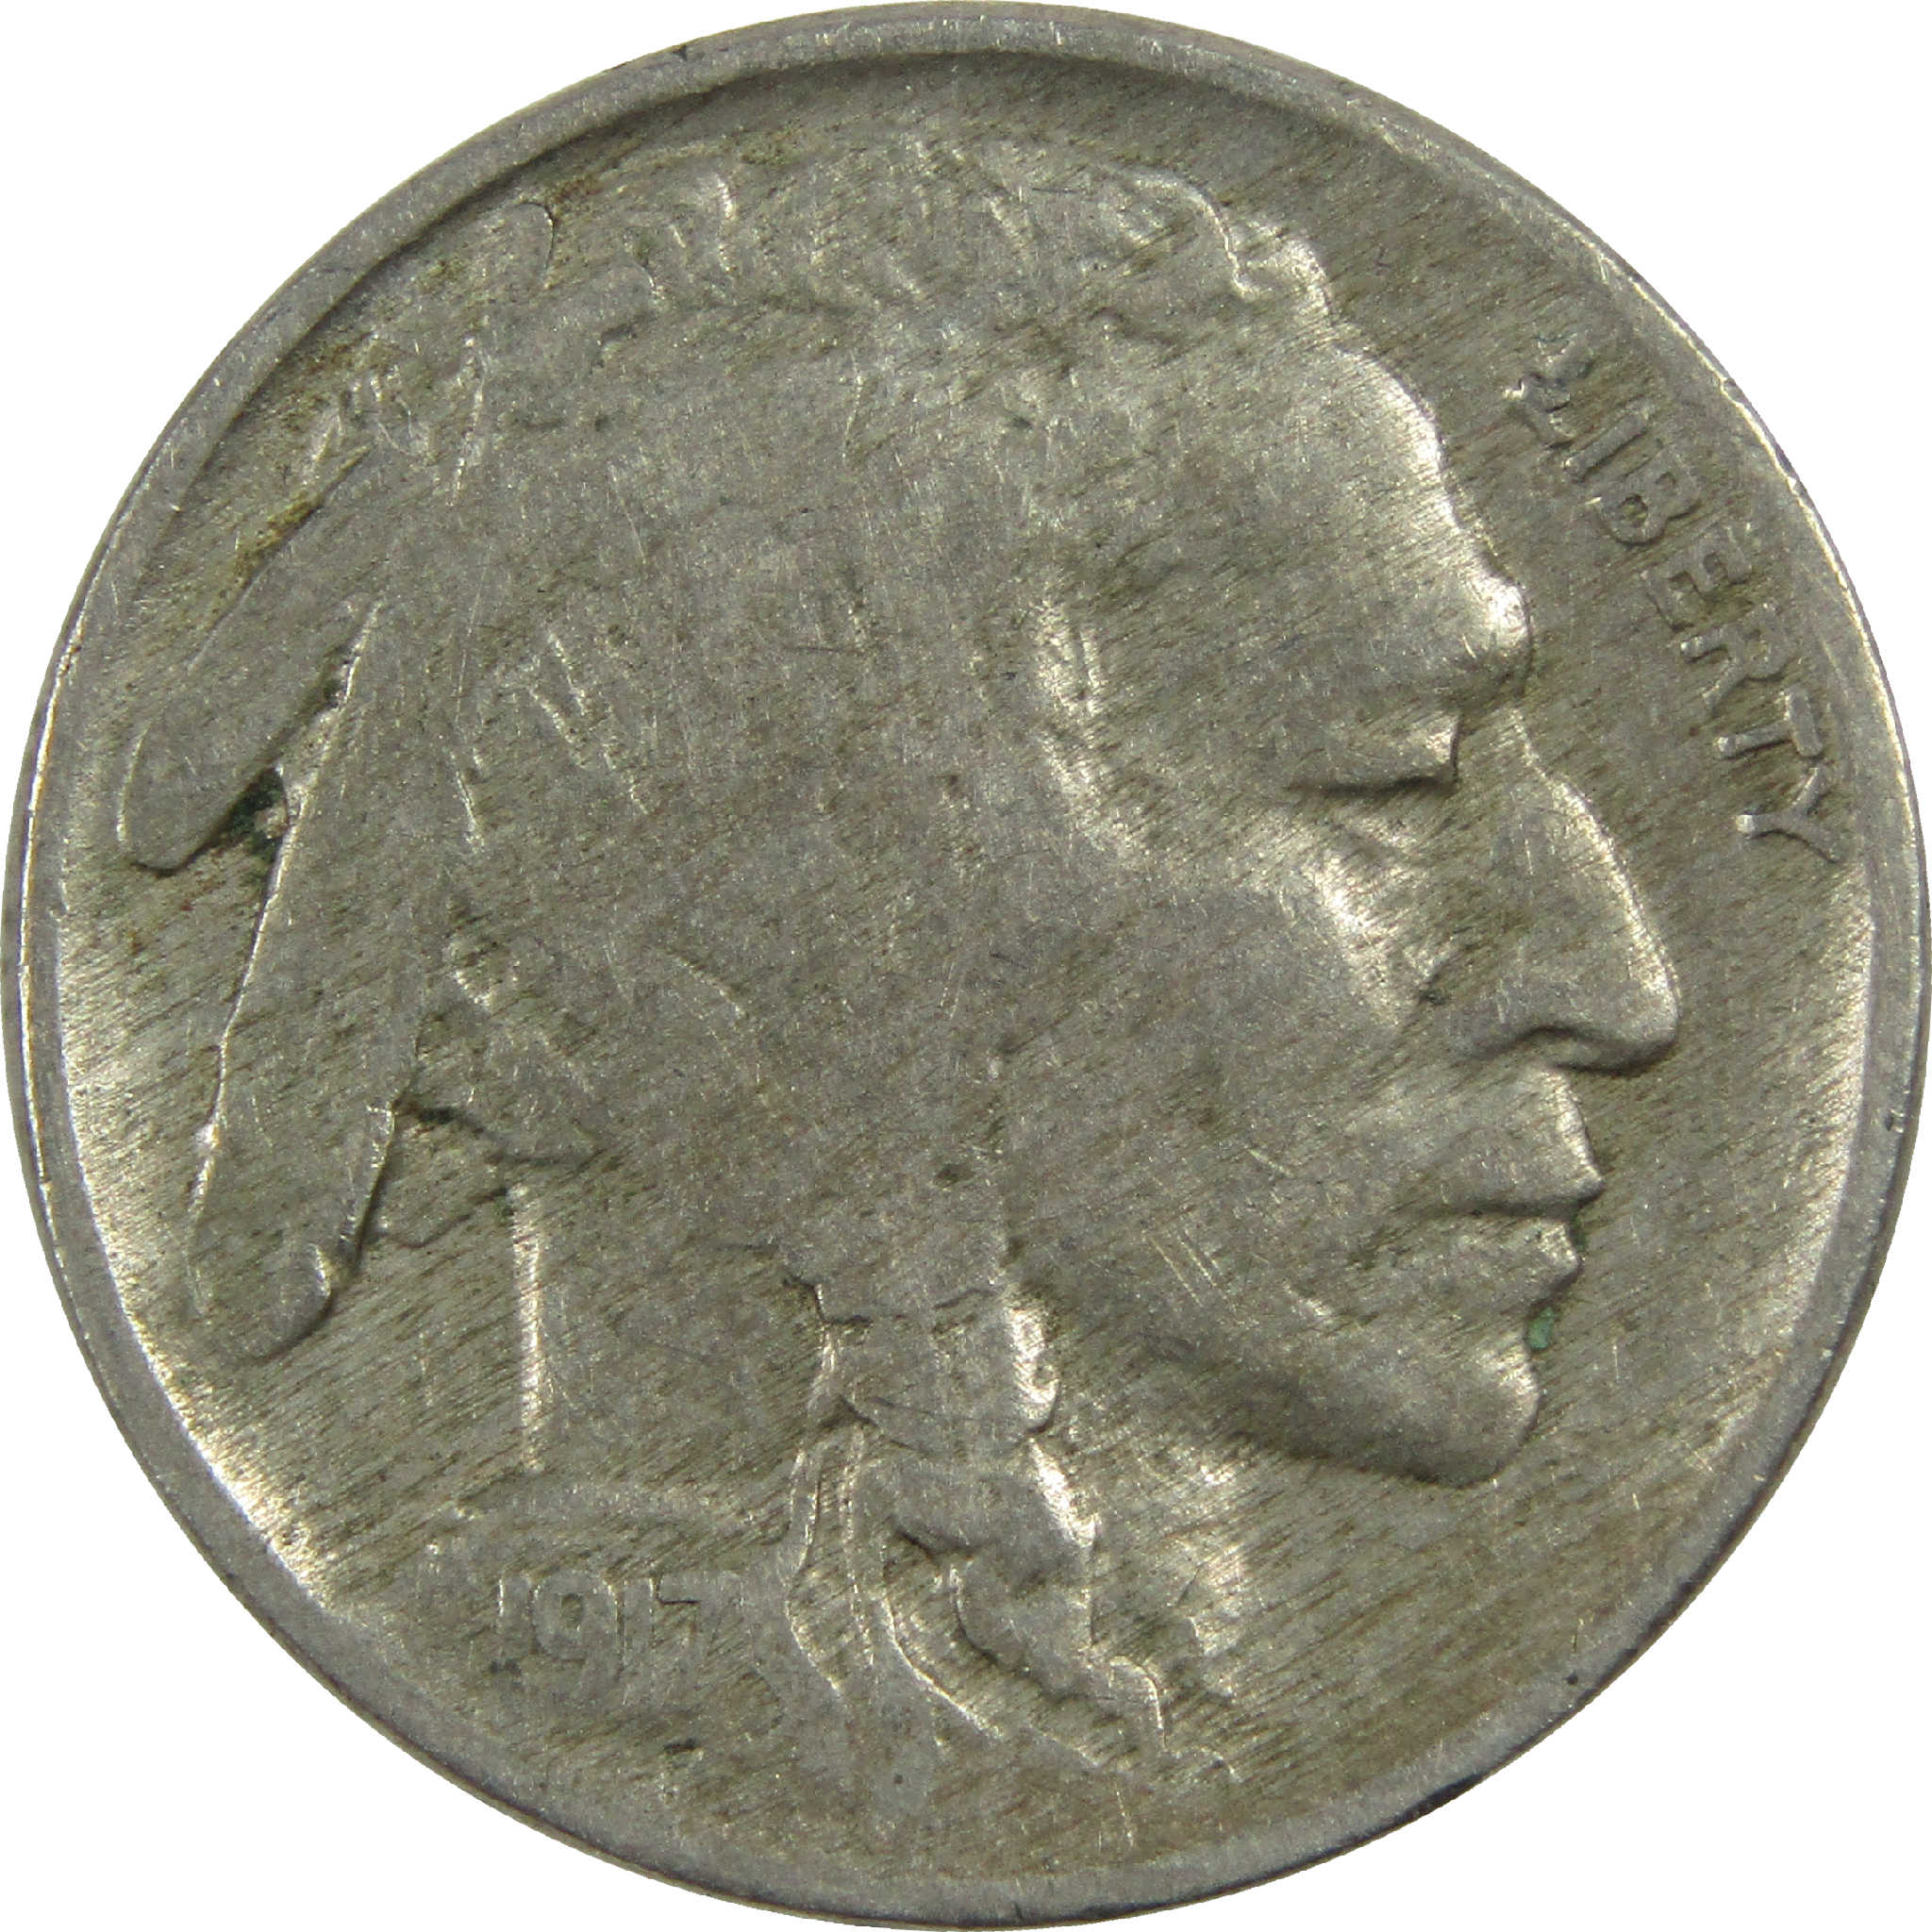 1917 Indian Head Buffalo Nickel F Fine 5c Coin SKU:I13531